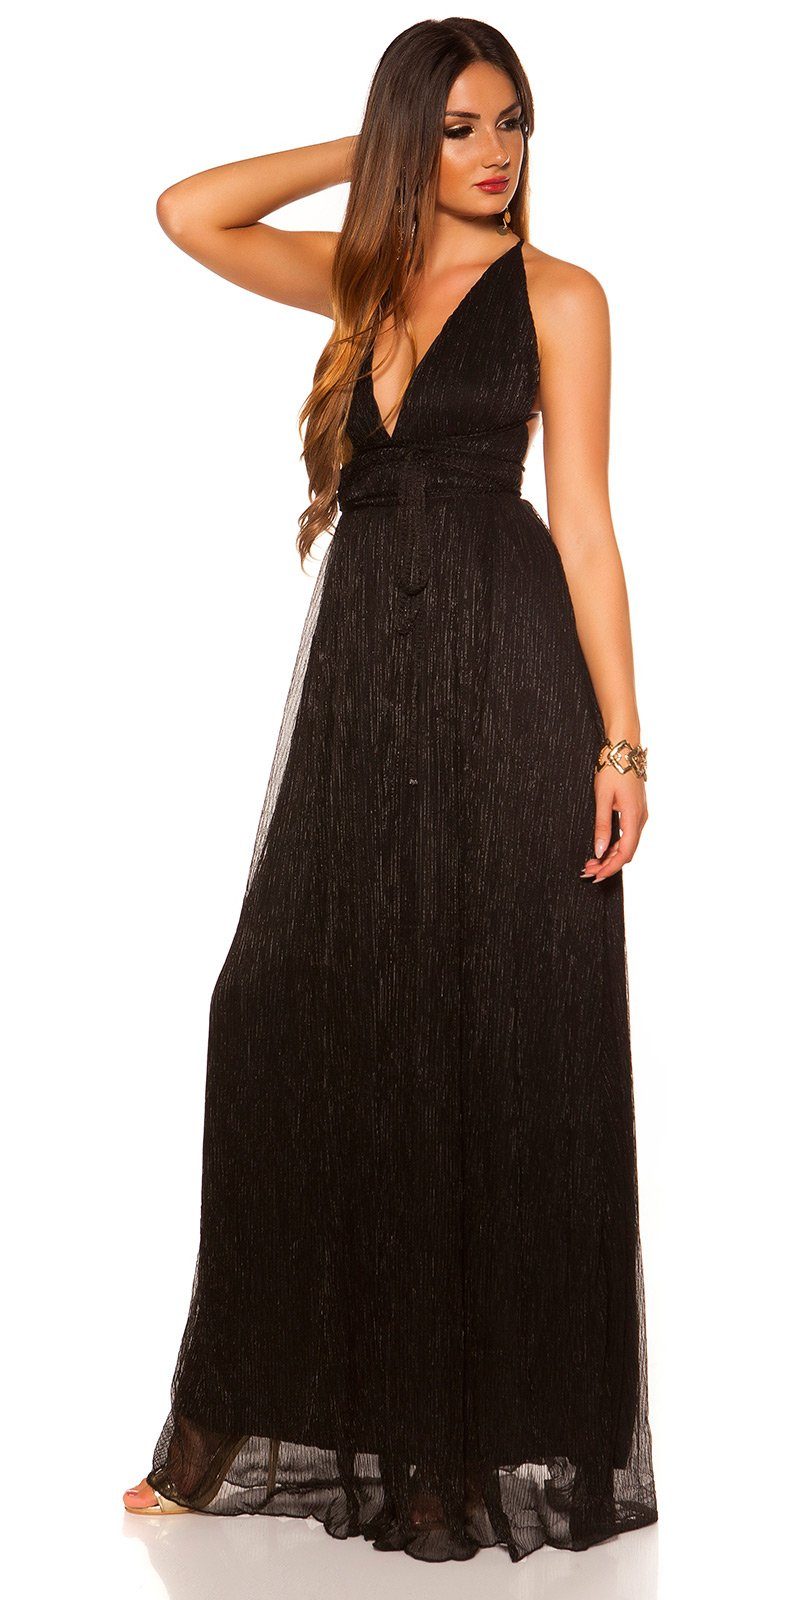 Koucla Abendkleid Maxikleid mit Rücken schwarz im offenem glänzendes, Plissee-Stil Material, Plissee glitzerndes